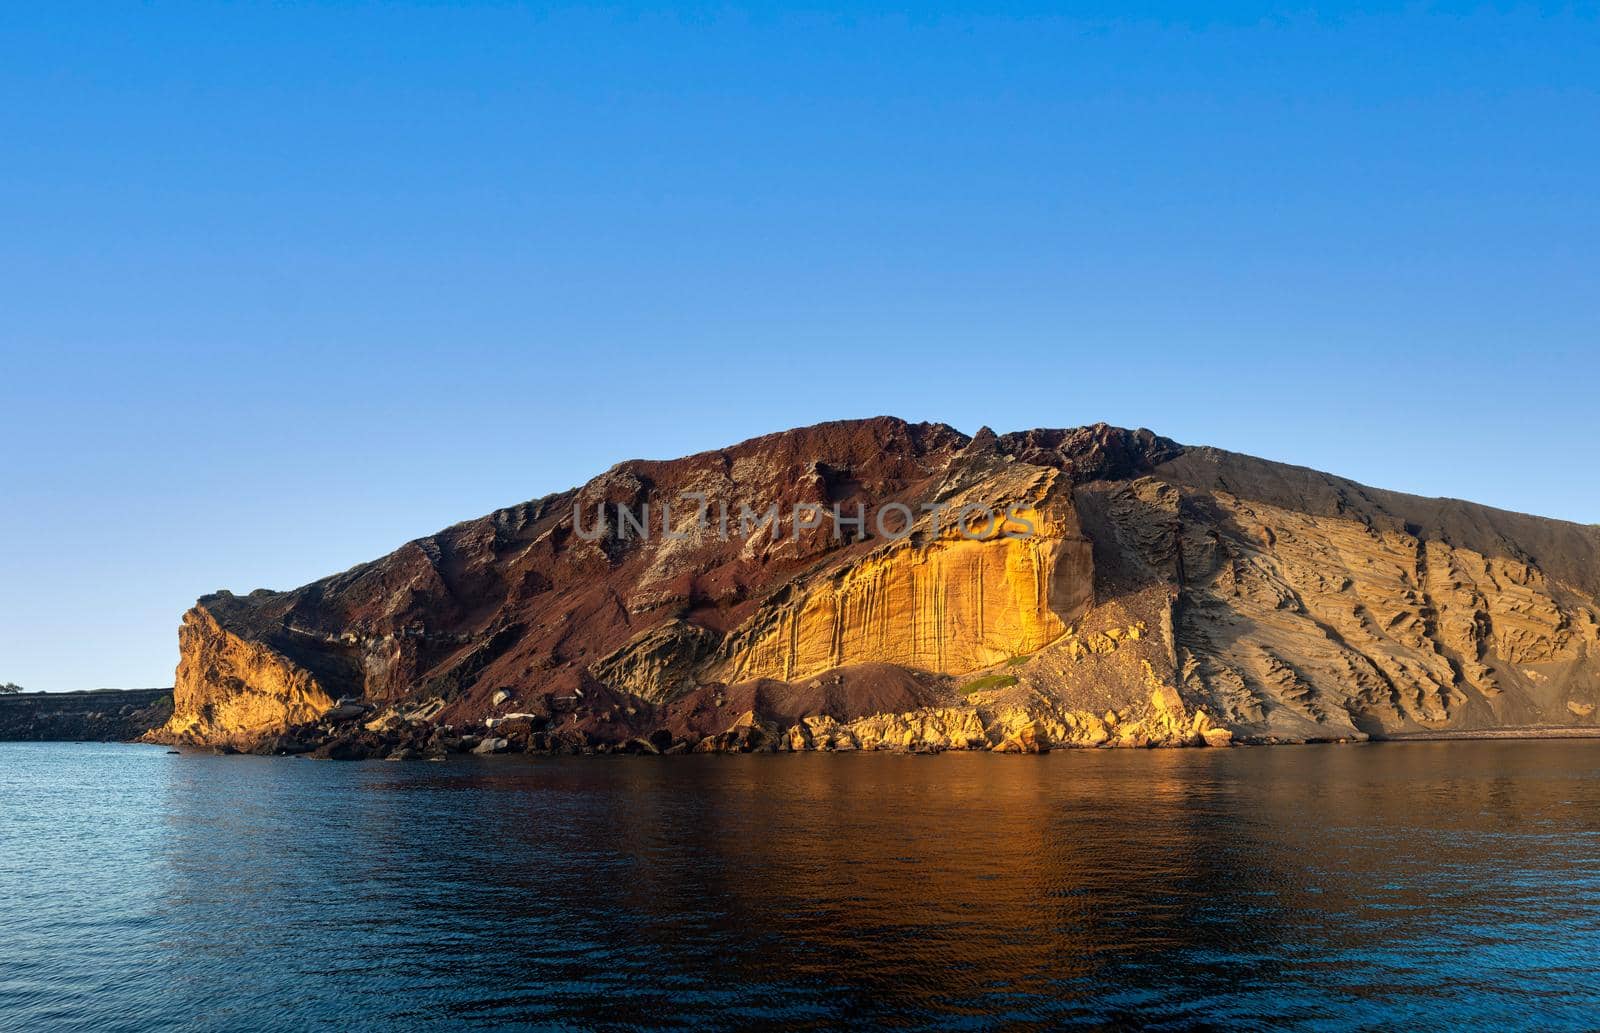 The Linosa volcano called Monte Nero in the beach of Cala Pozzolana di Ponente, Sicily by bepsimage